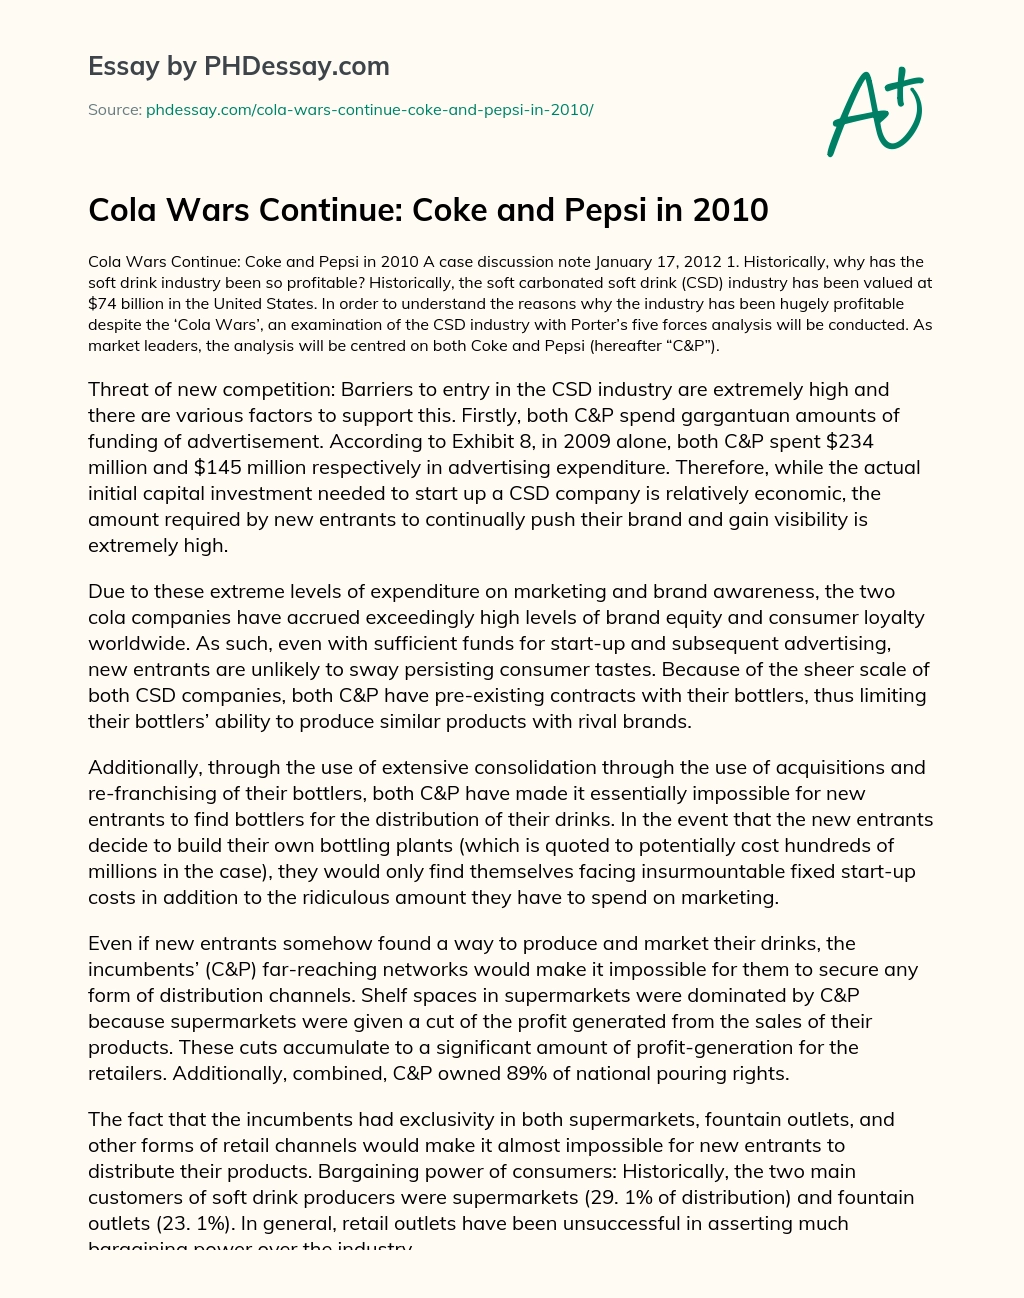 Cola Wars Continue: Coke and Pepsi in 2010 essay